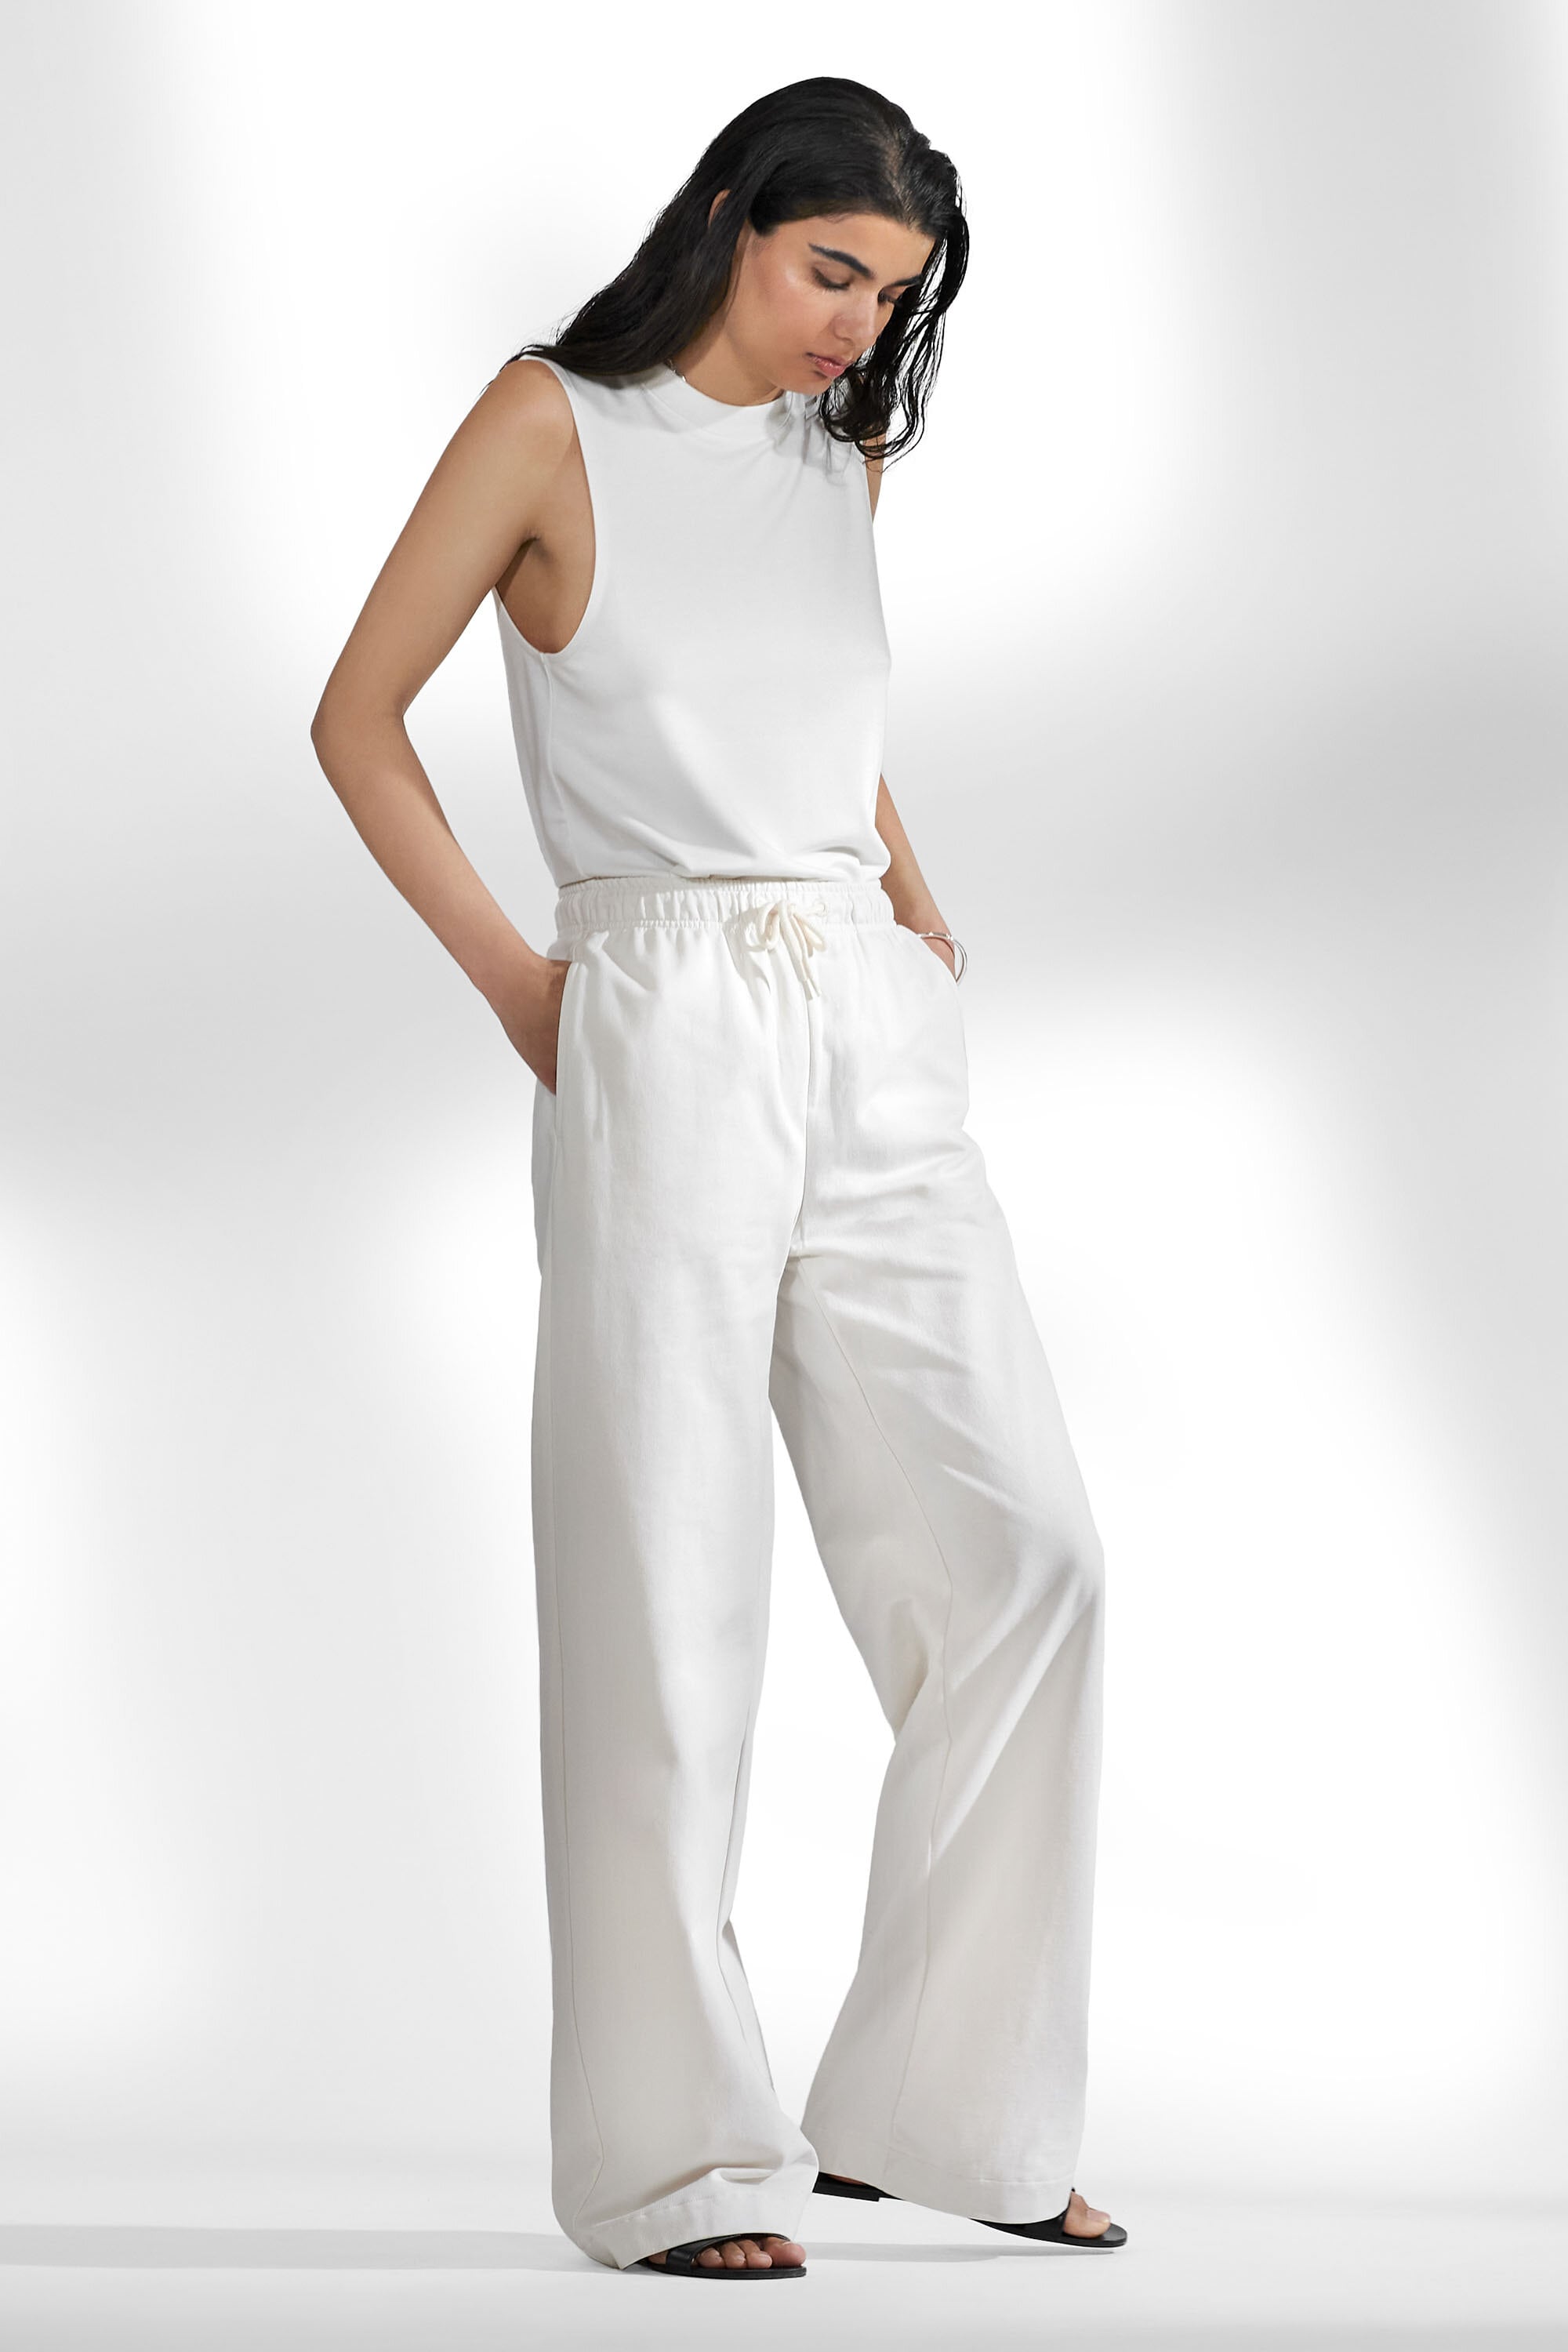 Altuzarra Bendix Wide-Leg Pants in Ivory - Meghan Markle's Pants - Meghan's  Fashion